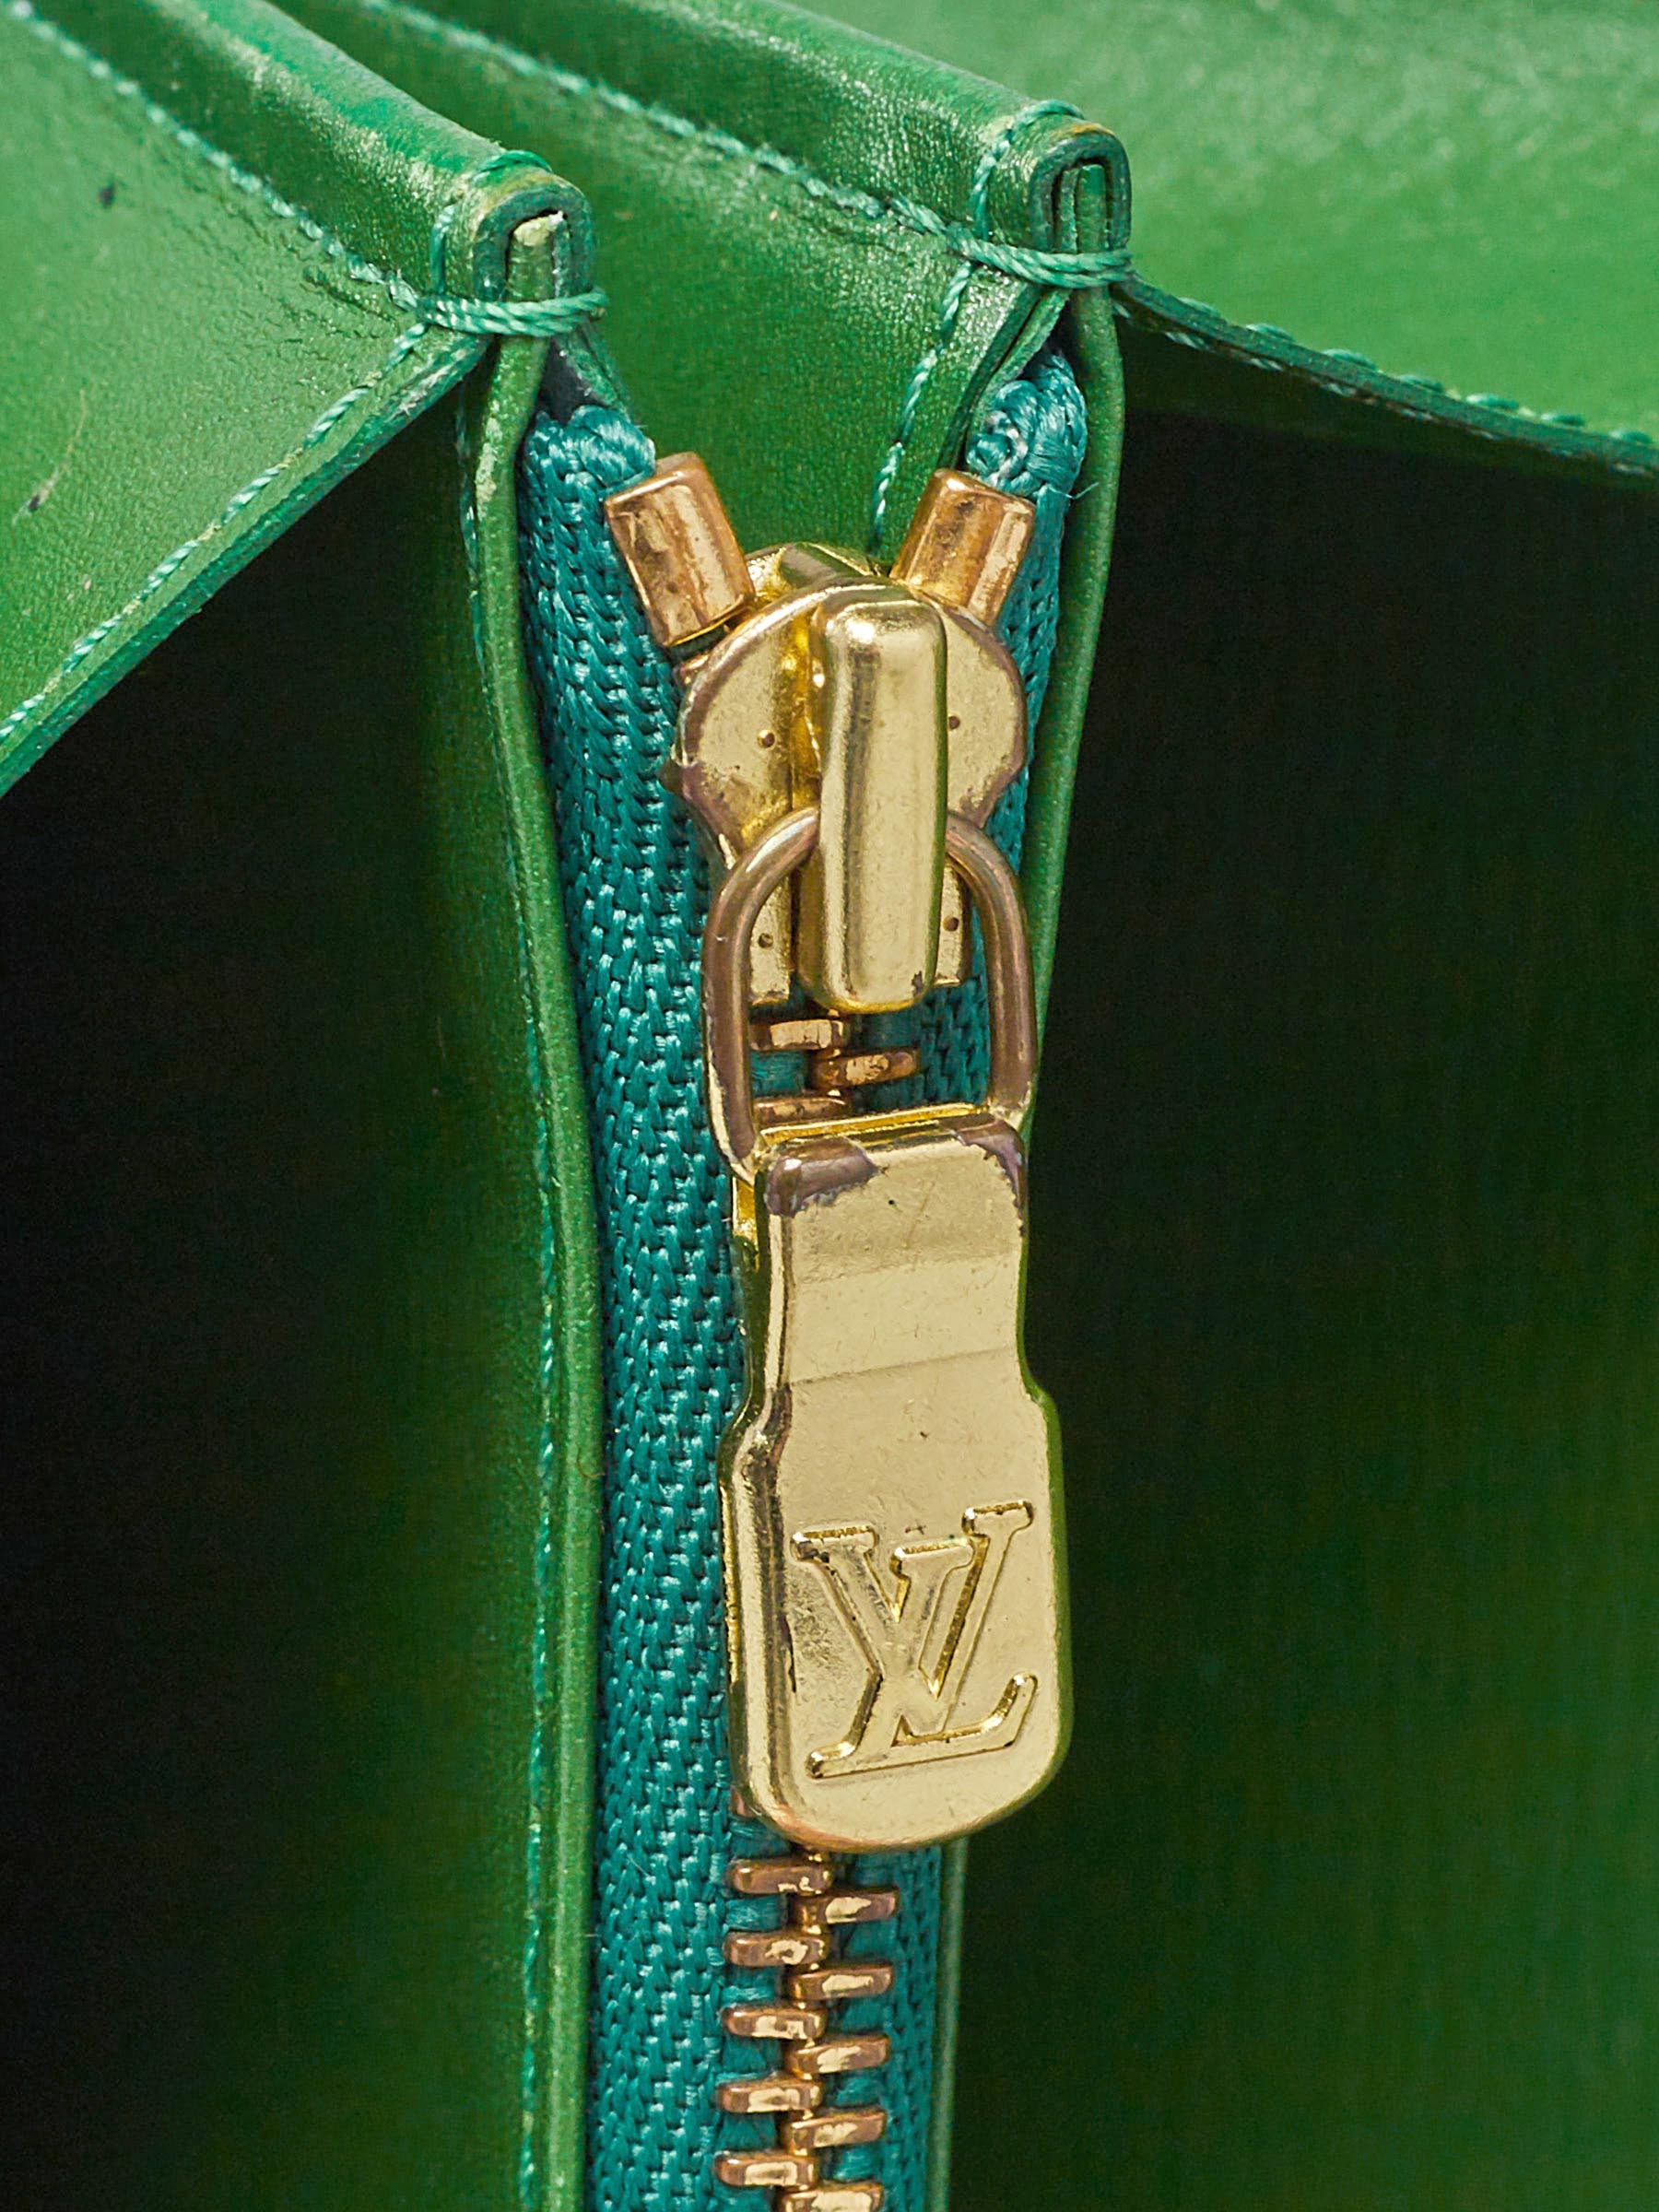 Authentic Louis Vuitton Epi Green Sarah Wallet